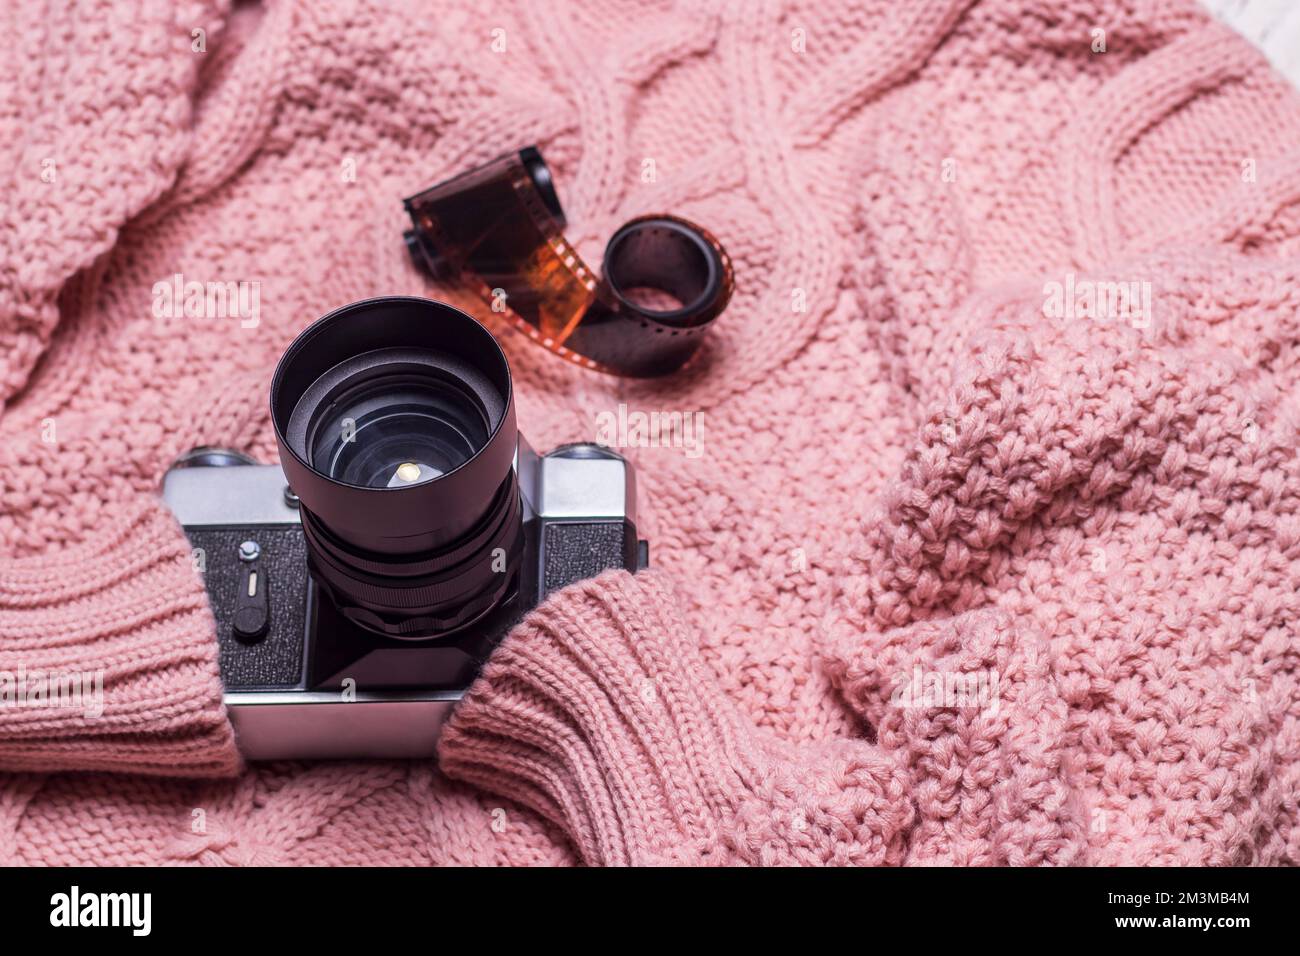 Un ancien appareil photo rétro repose sur un pull en laine rose. Banque D'Images